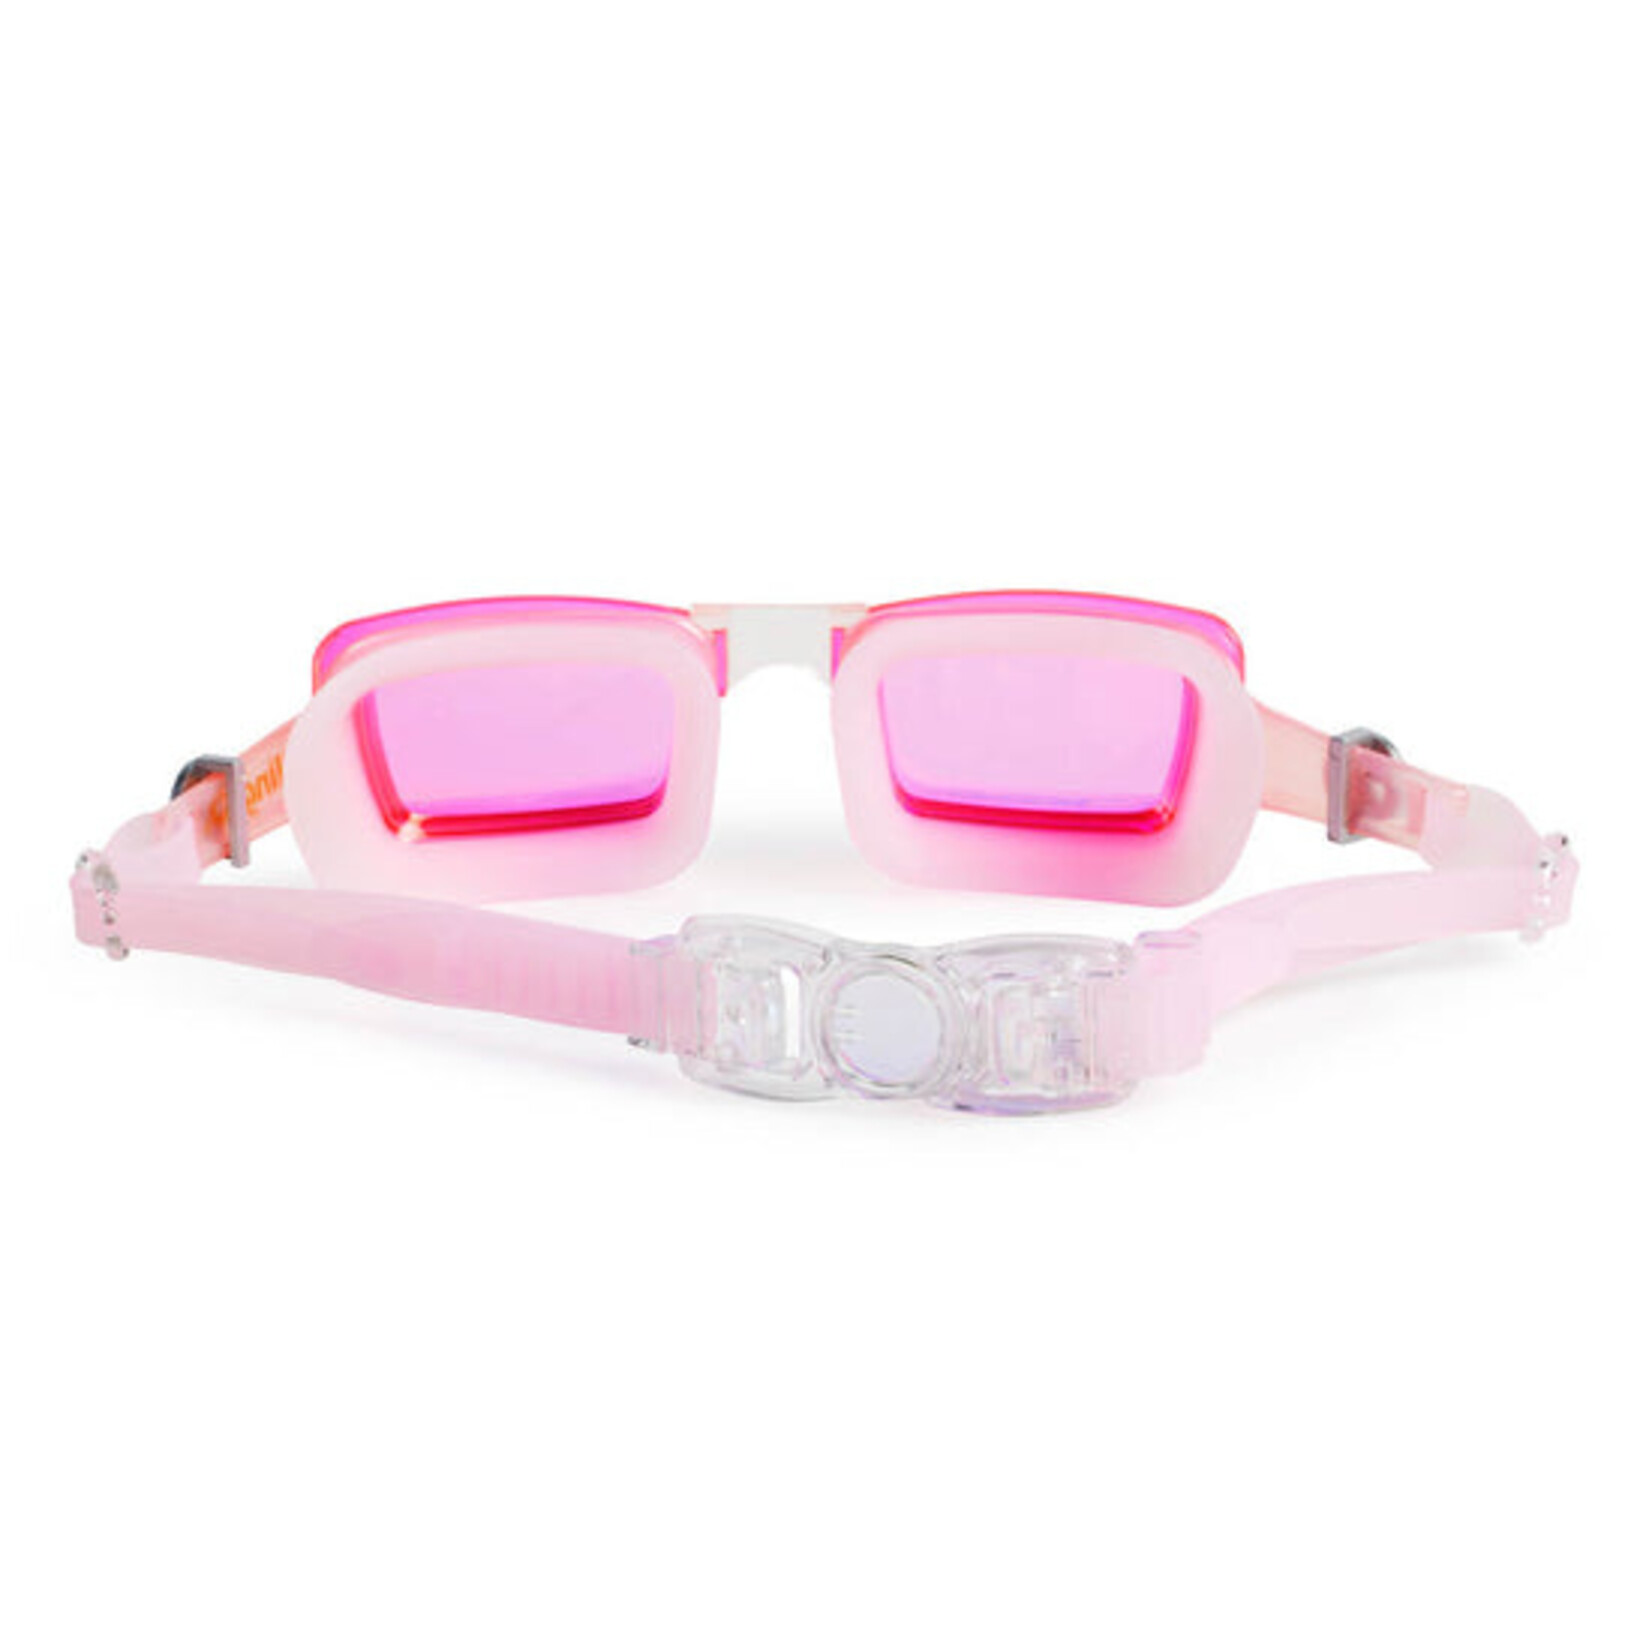 Rhinestone Rose Quartz Goggles - Adult